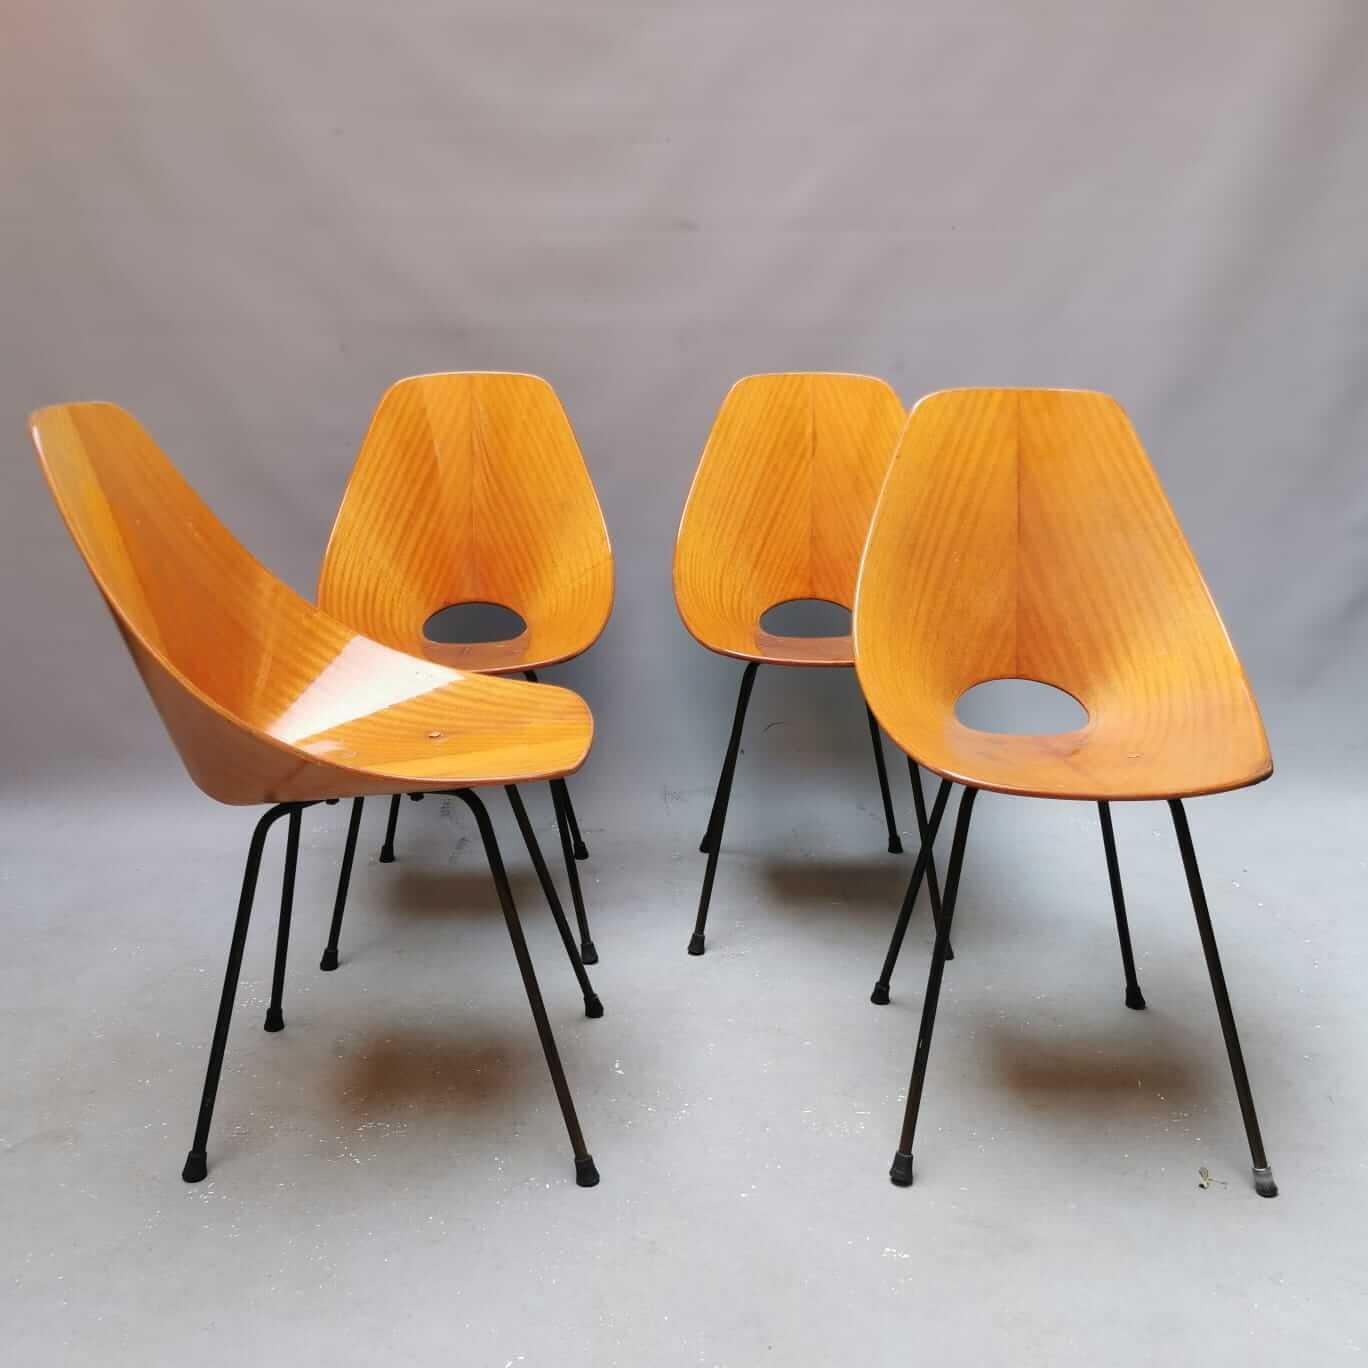 Les chaises Medea sont un classique créé par l'architecte et designer italien Vittorio Nobili en 1955. Les chaises portent le nom de la sorcière grecque mythique Medea, connue pour son intelligence et sa ruse.

Les chaises Medea sont fabriquées en